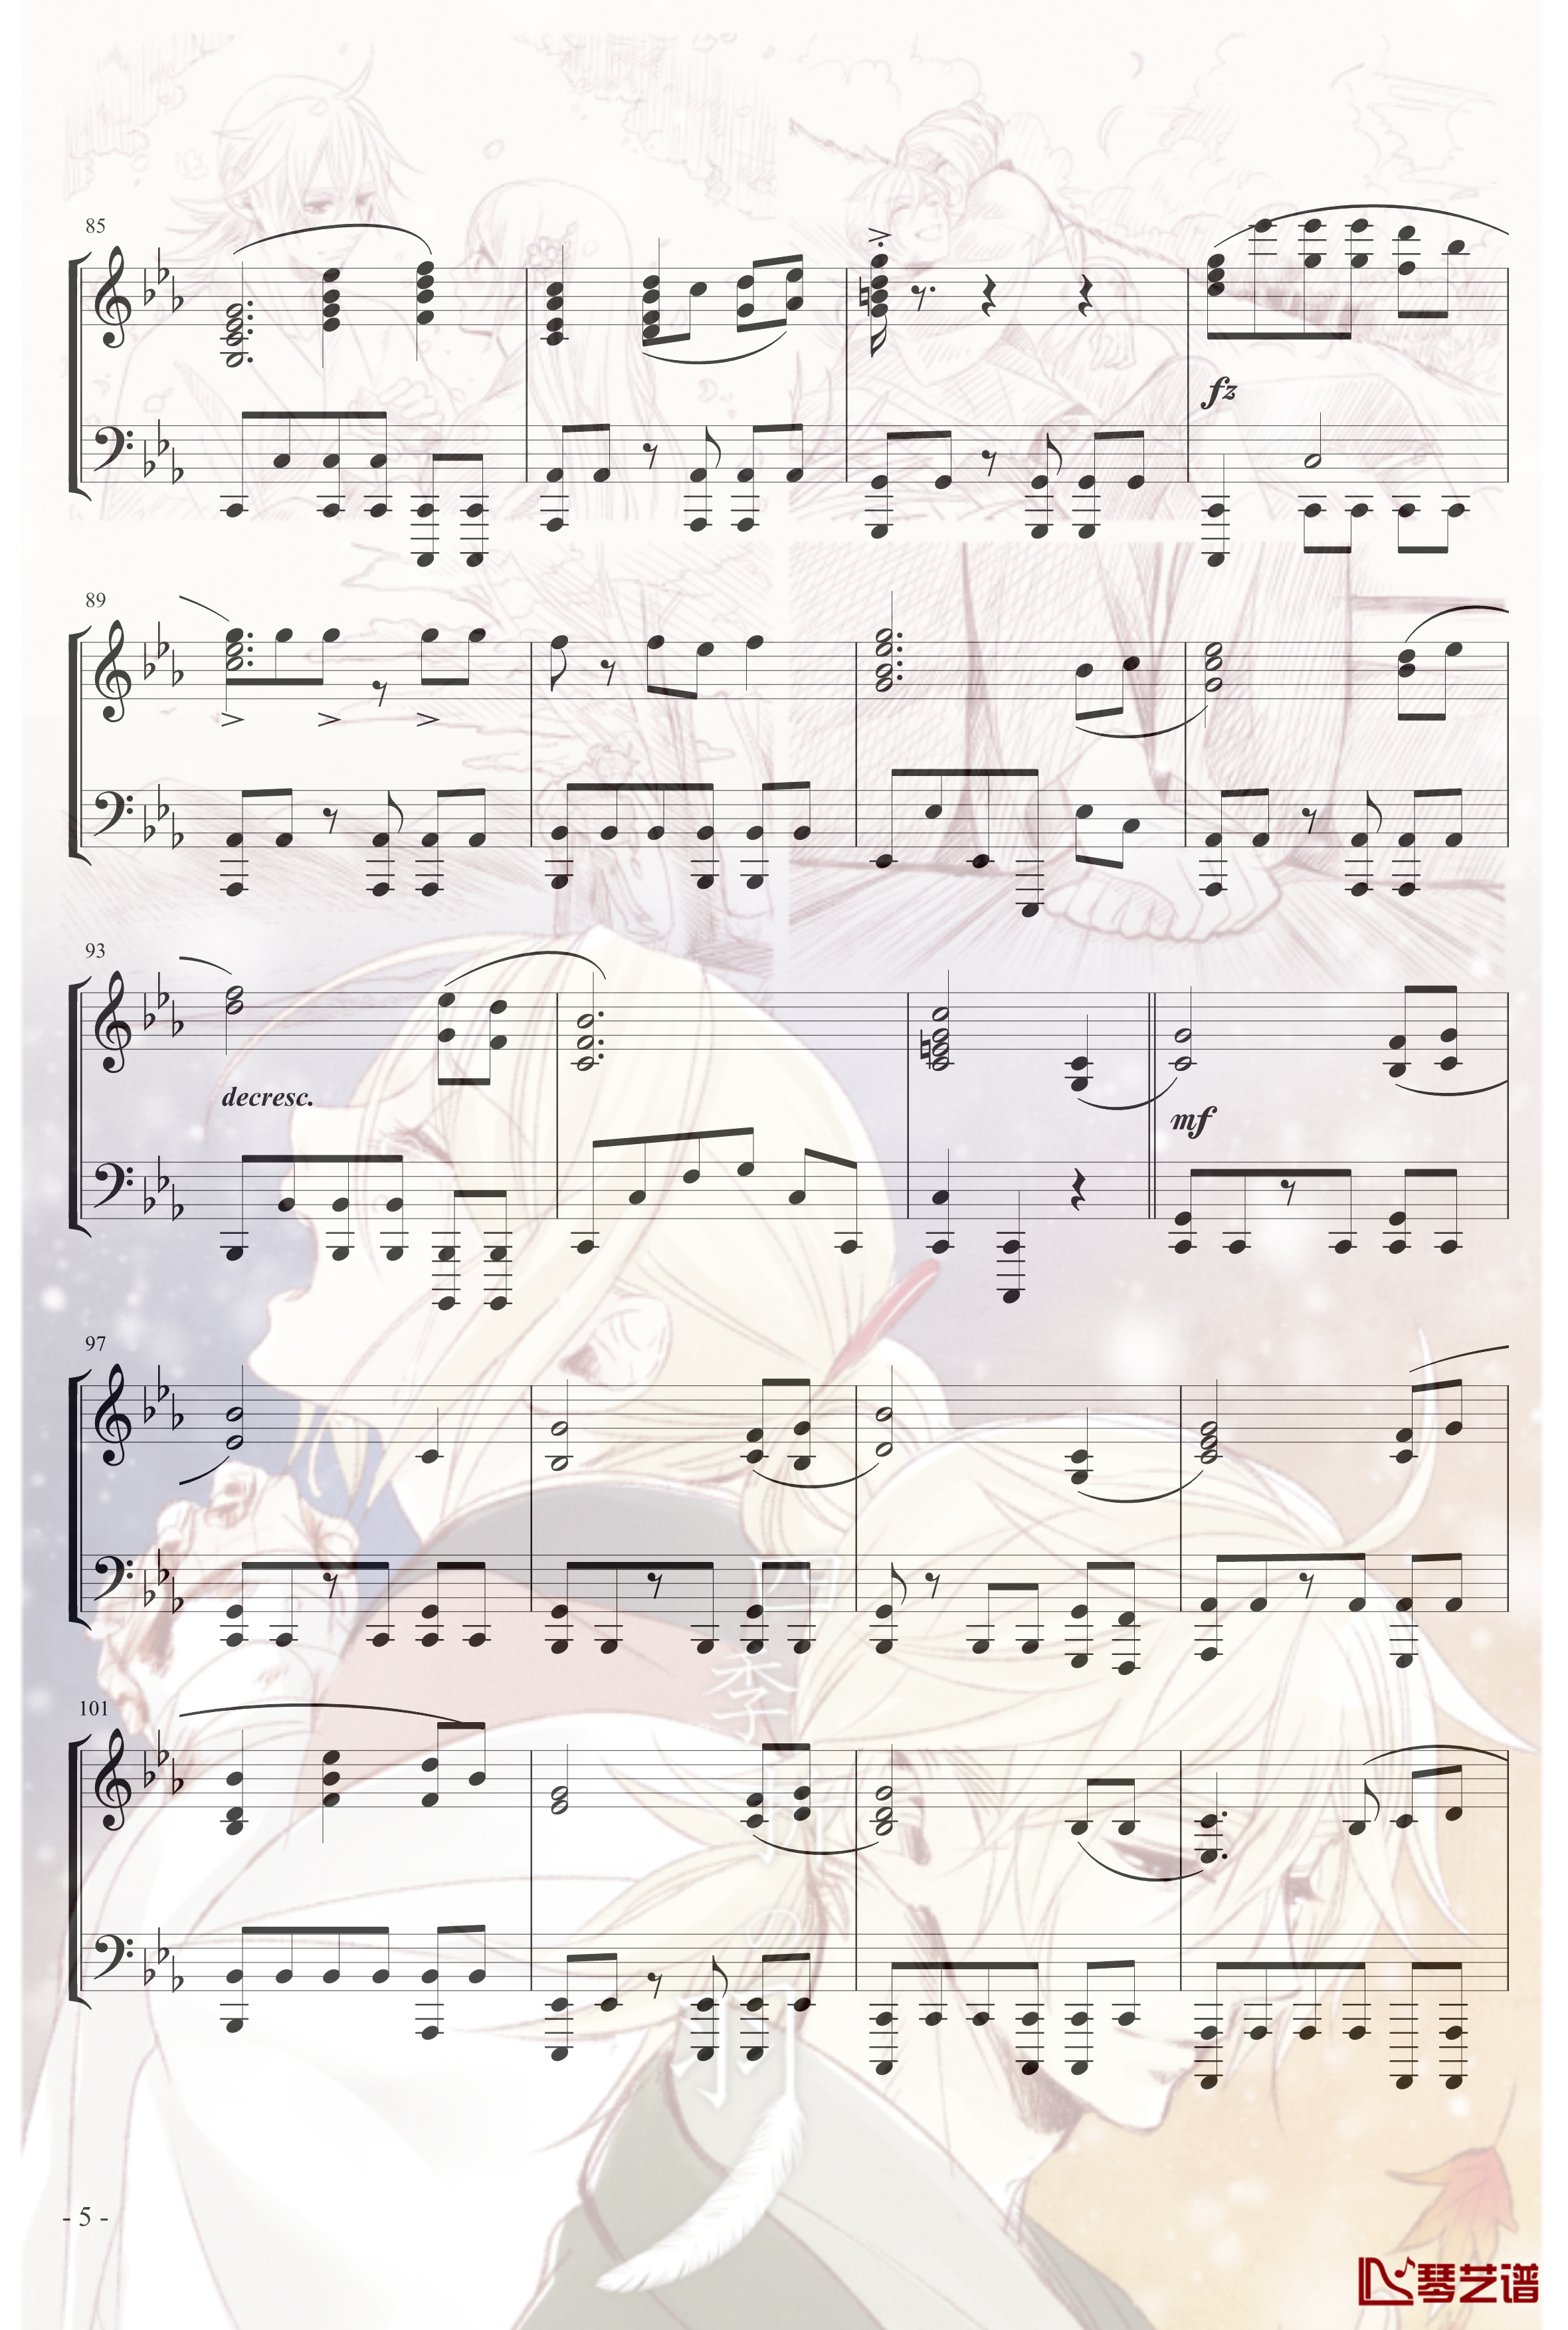 镜音リン レン四季折之羽钢琴谱-初音未来5